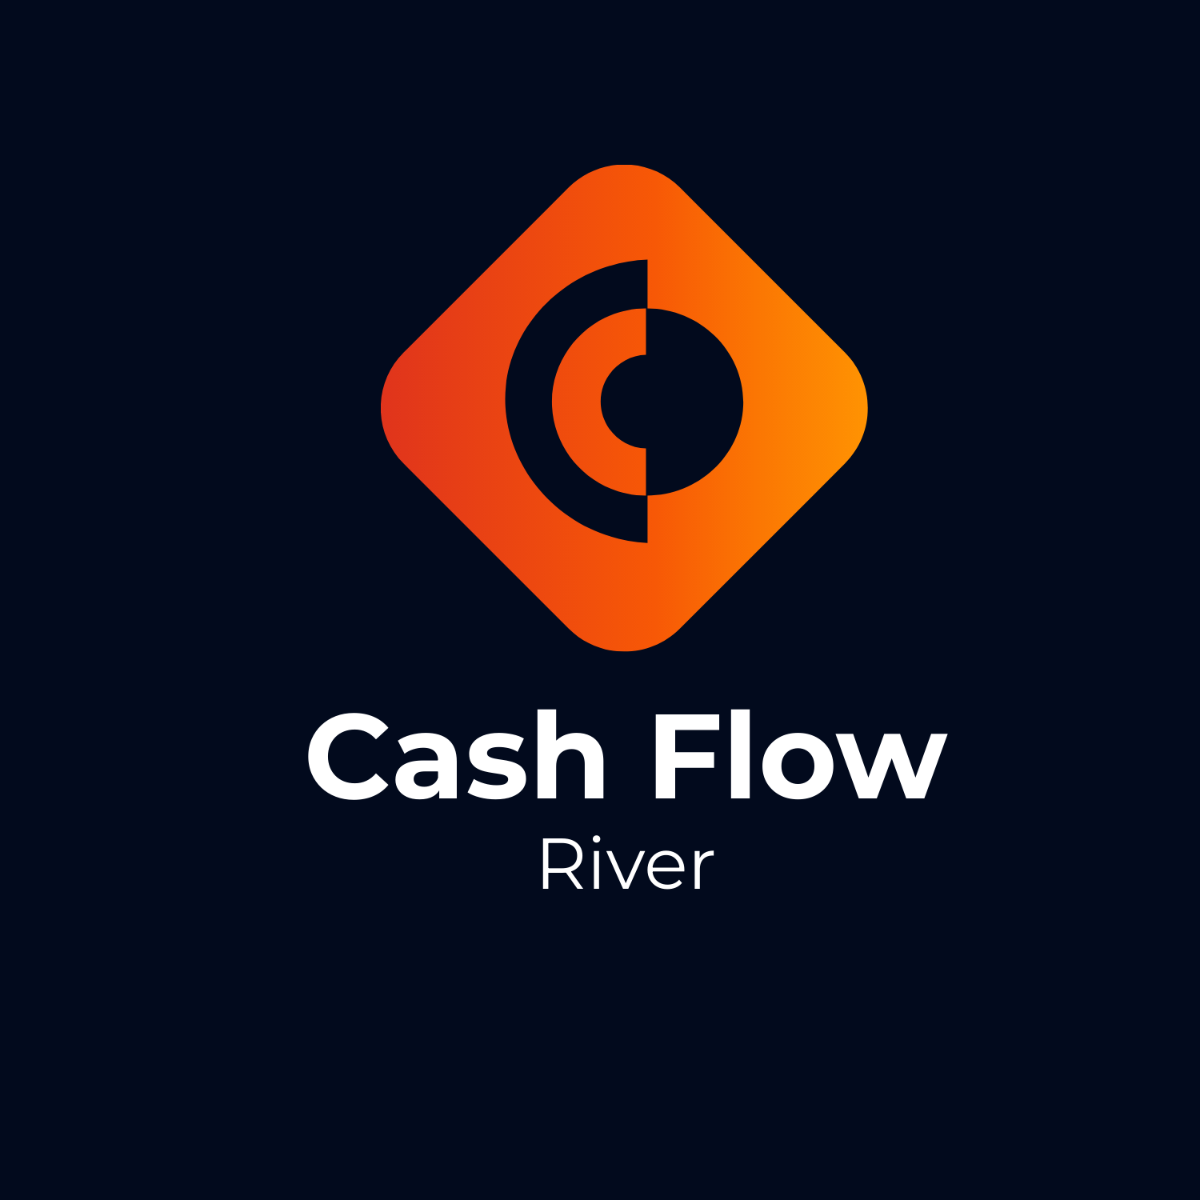 Cash Flow River Logo Template